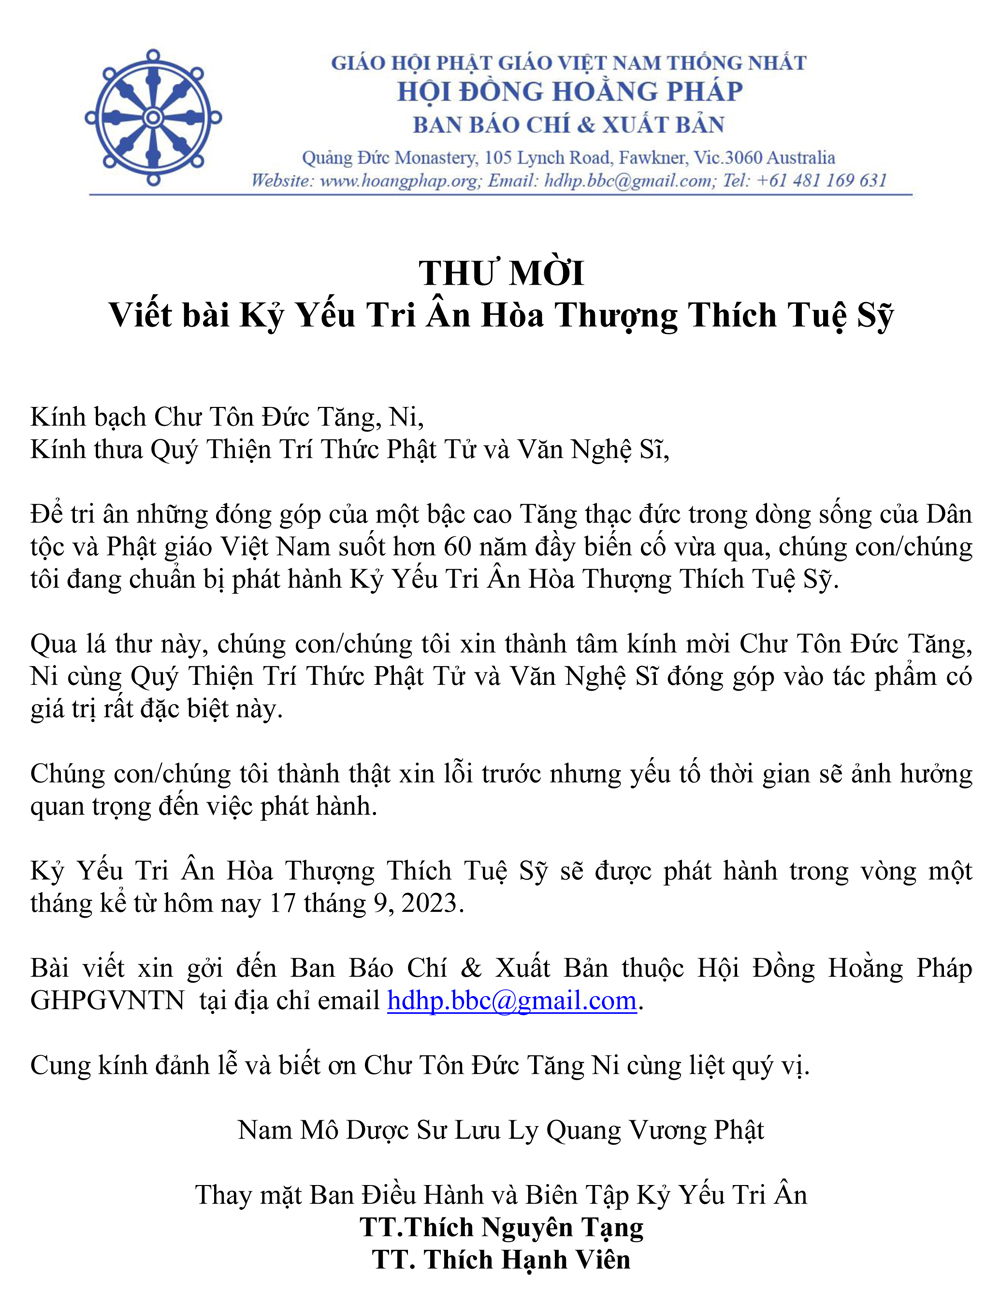 Thu Moi Viet Bai Ky Yeu Tri An_HT Tue Sy